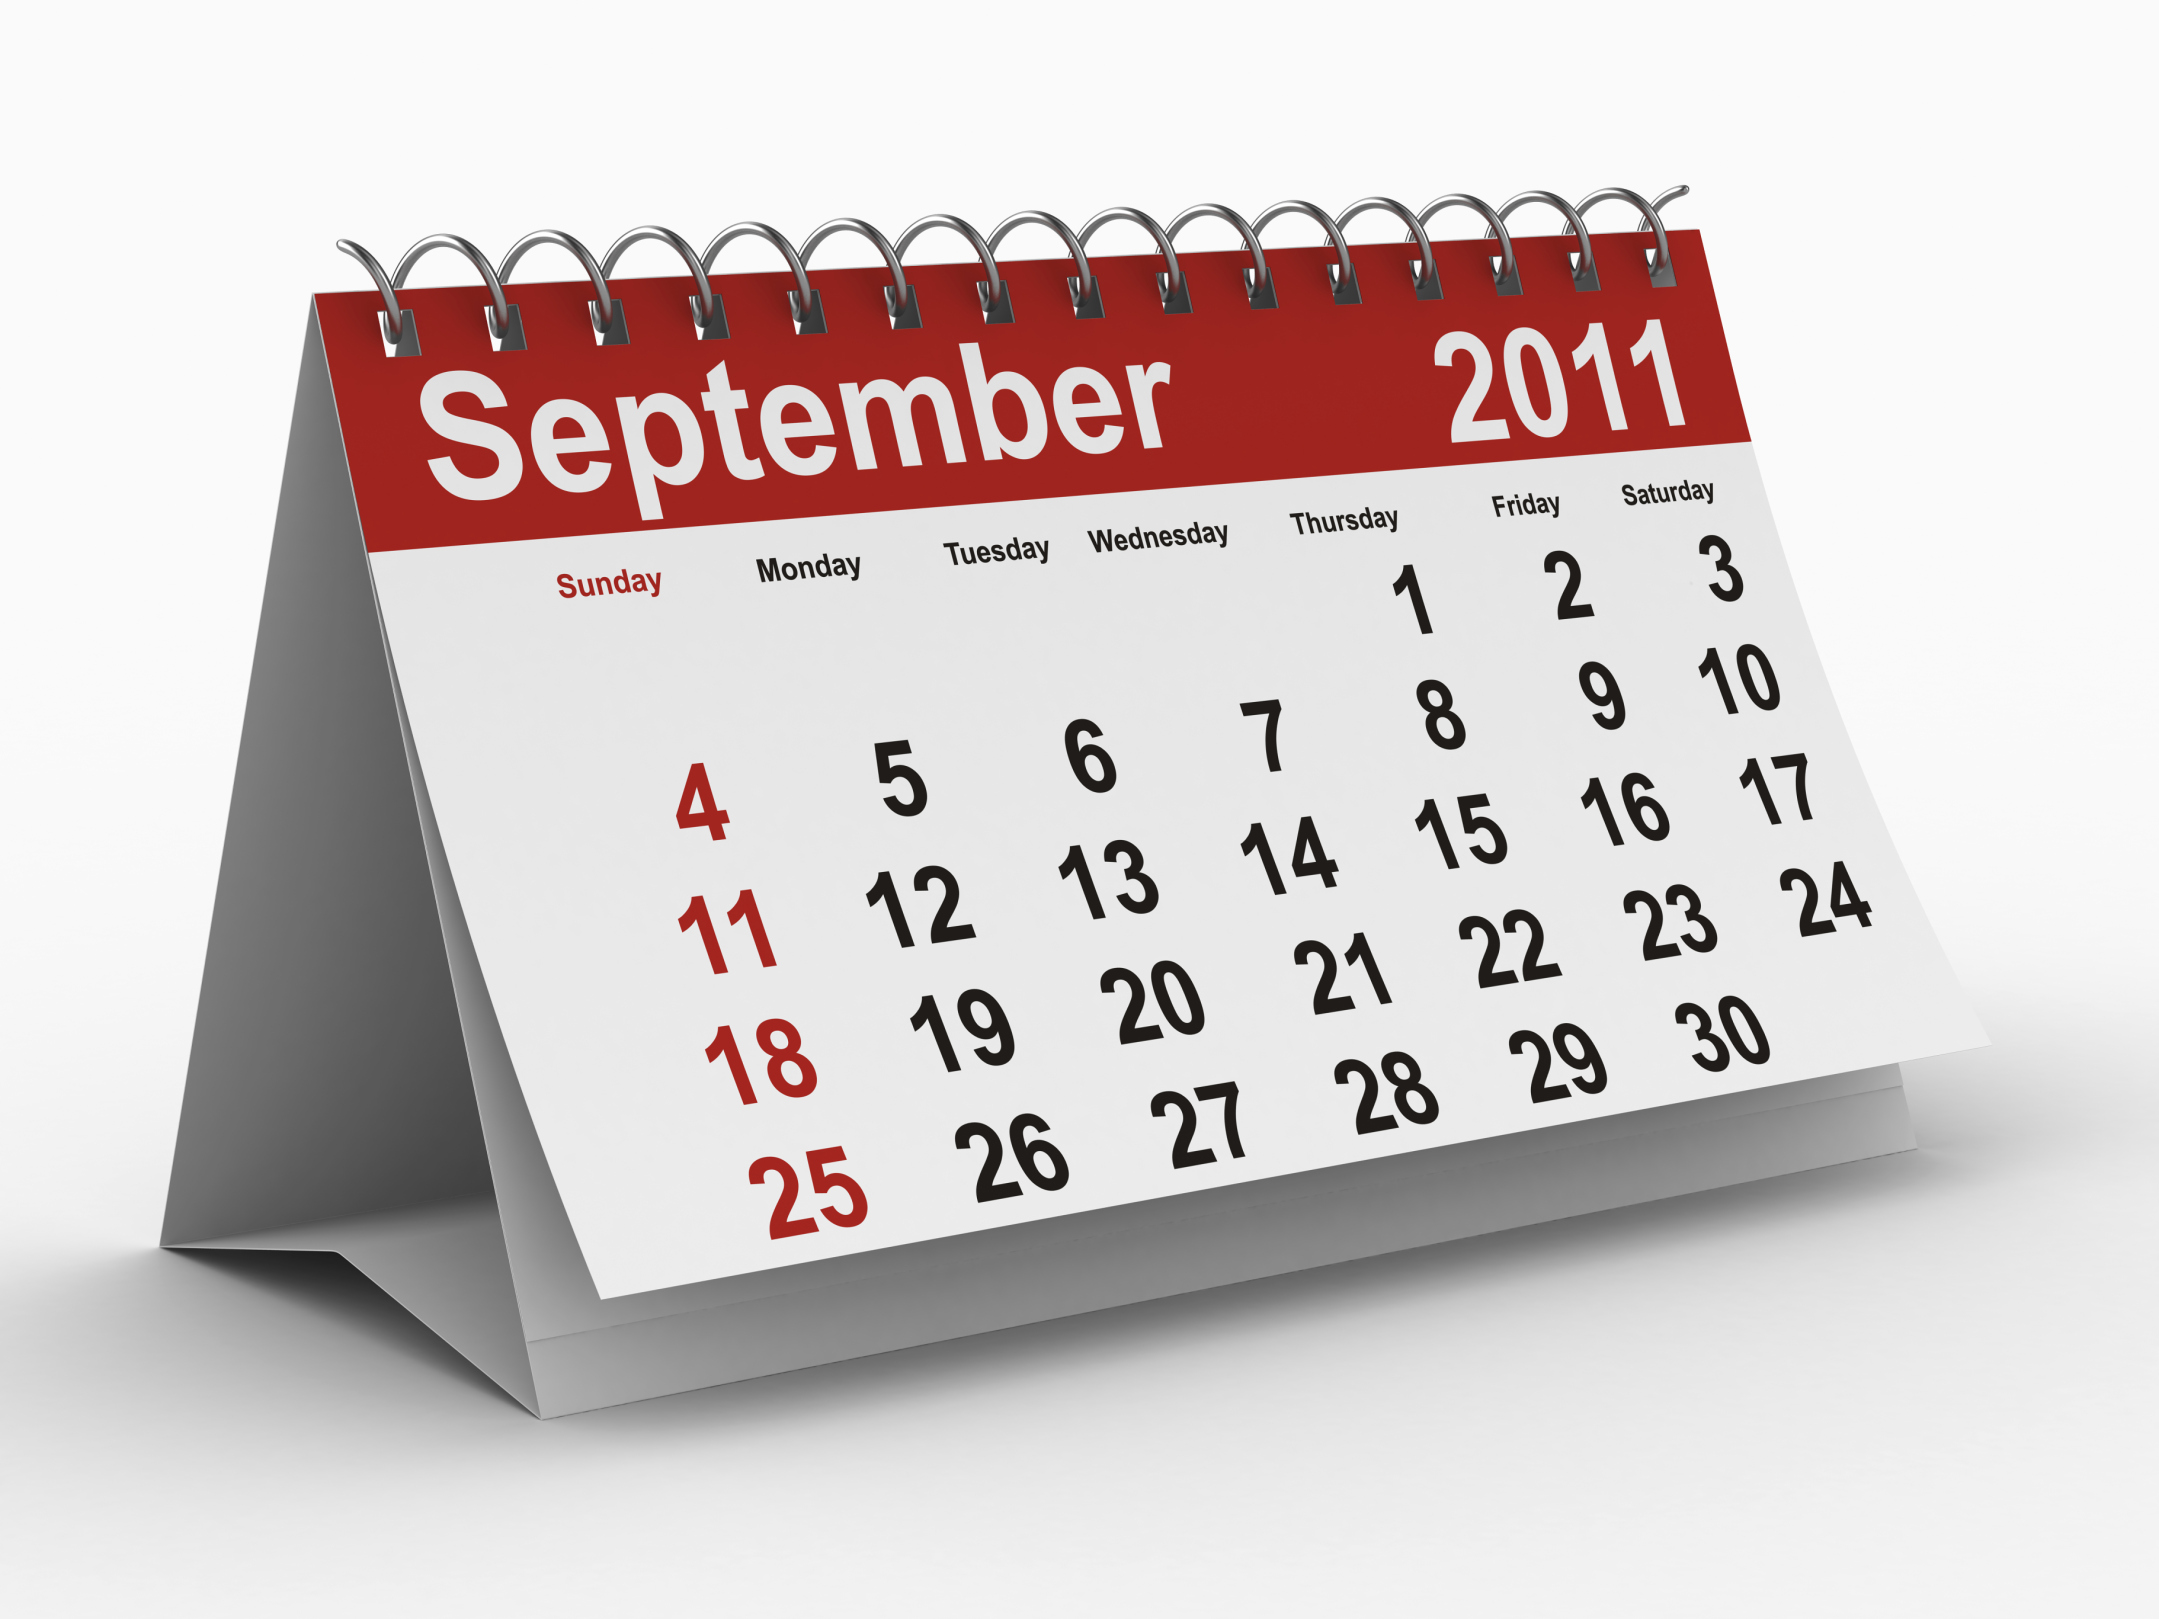 September 2011 Commercial Calendar